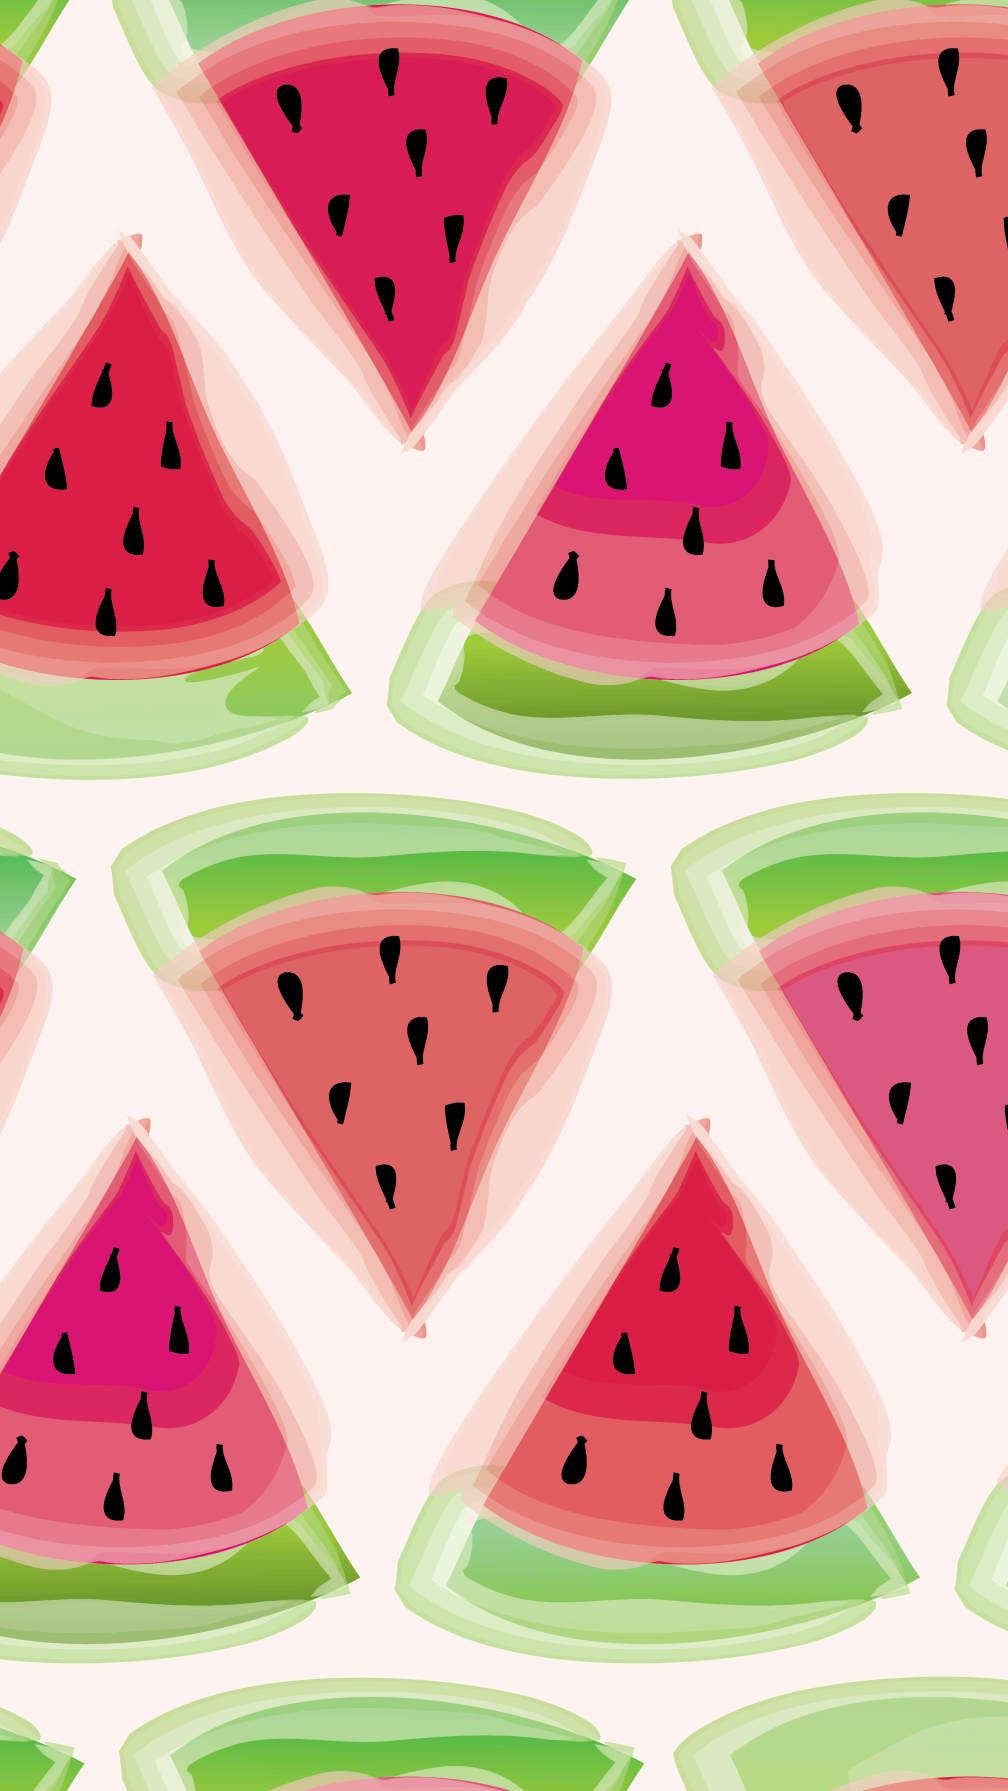 Freebie watermelon wallpaper.